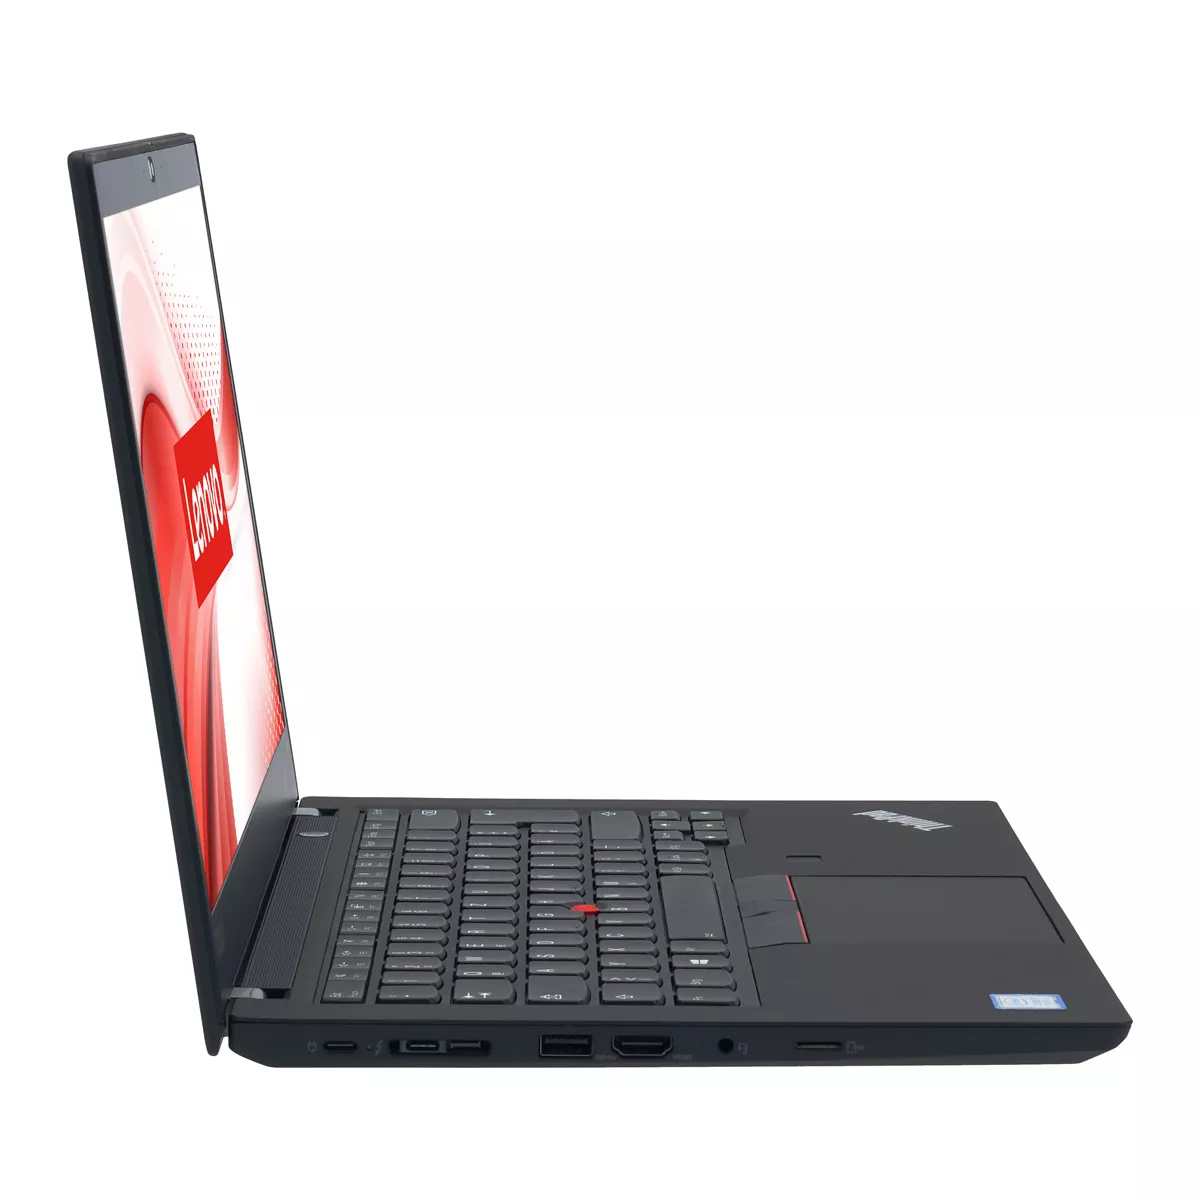 Lenovo ThinkPad T490 Core i5 8365U 16 GB 240 GB M.2 nVME SSD Webcam A+